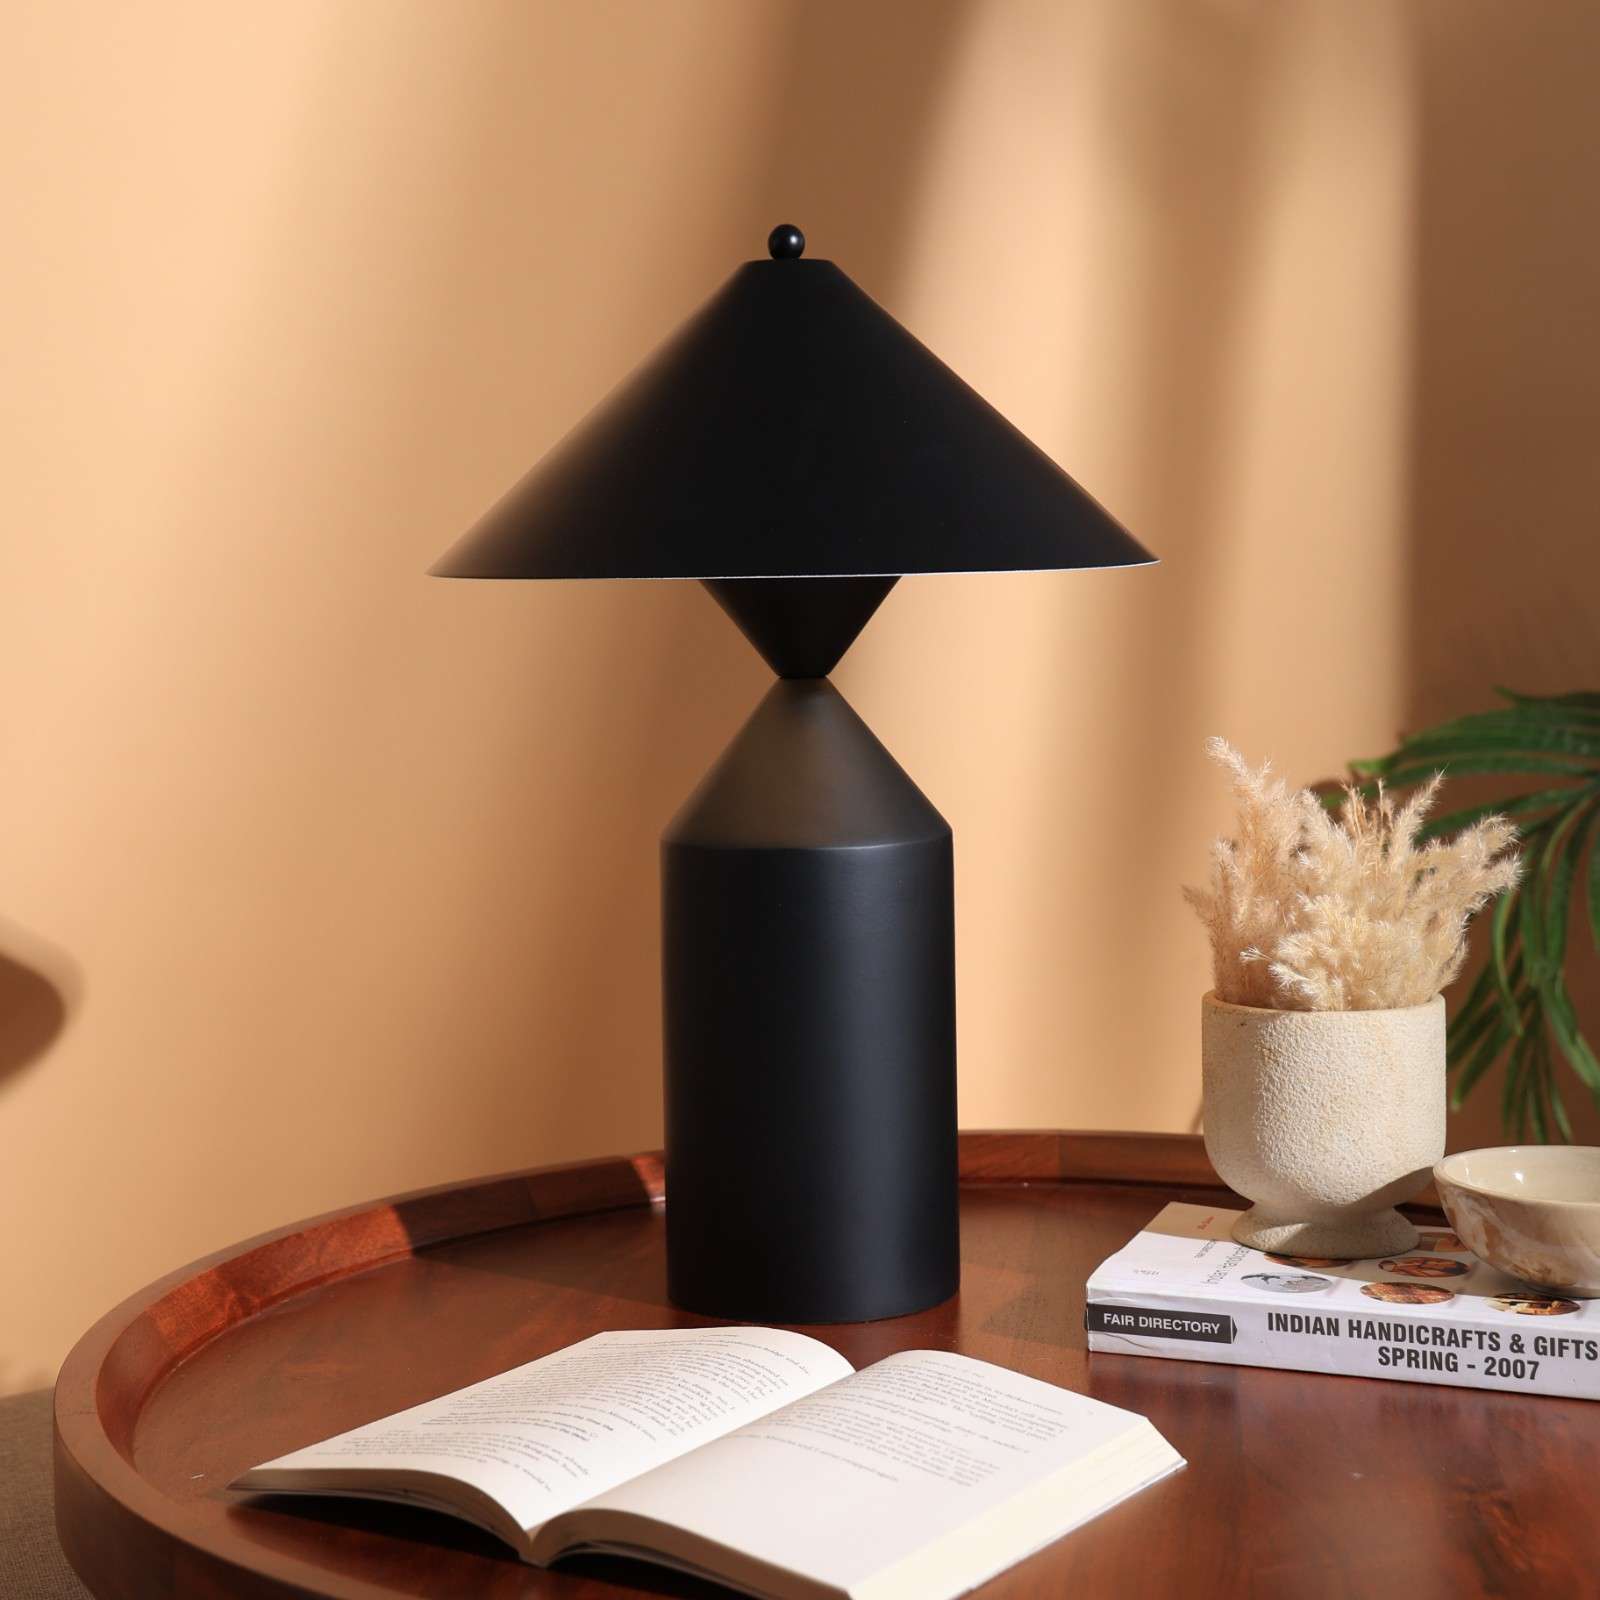 Cone Casa Table Lamp